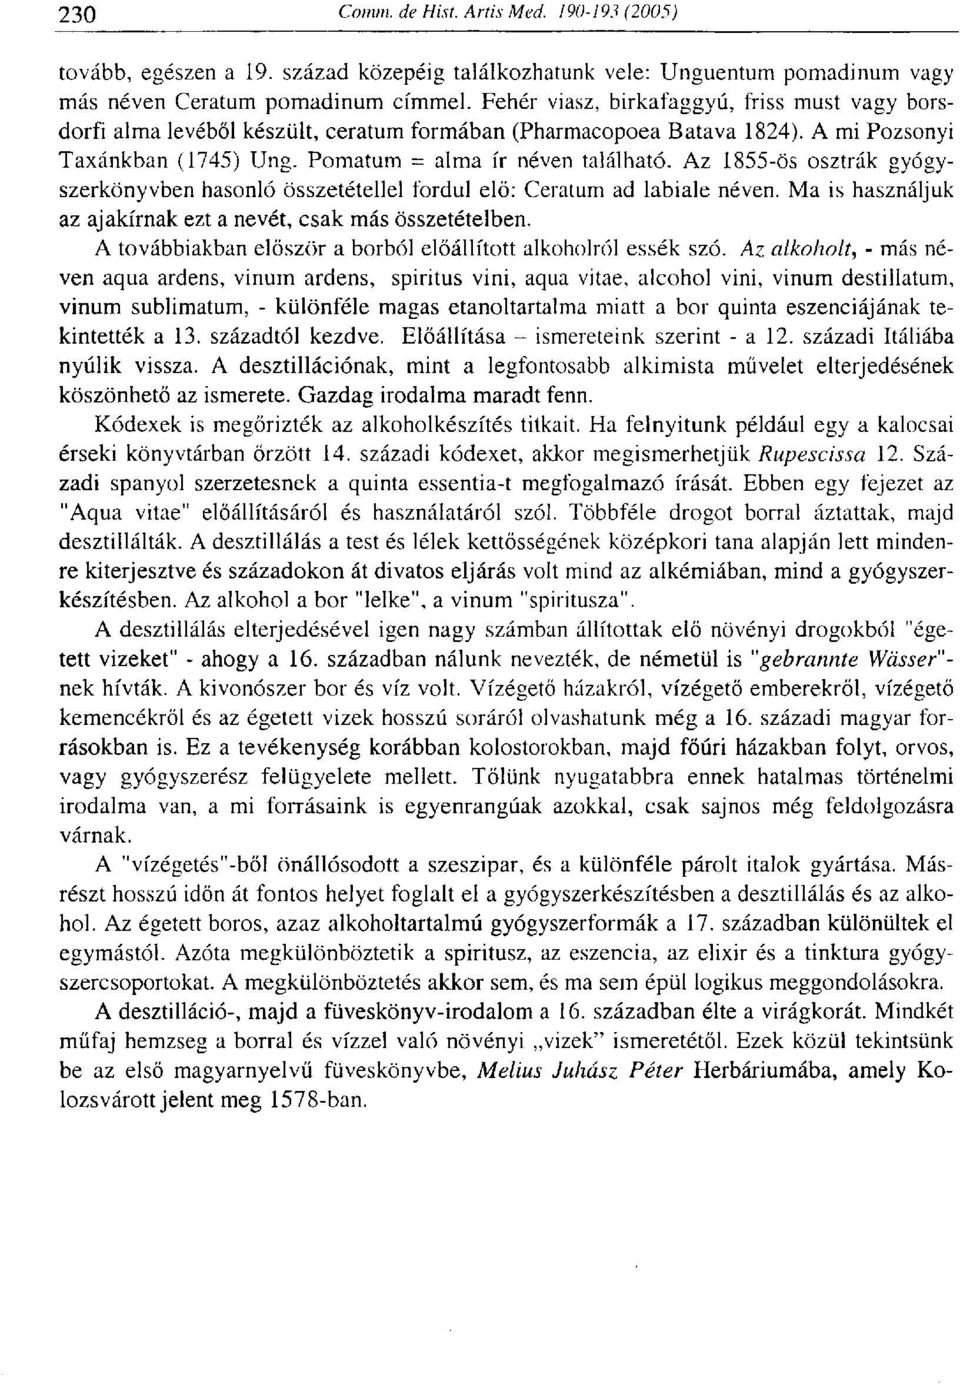 Az 1855-ös osztrák gyógyszerkönyvben hasonló összetétellel fordul elő: Ceratum ad labiale néven. Ma is használjuk az ajakírnak ezt a nevét, csak más összetételben.